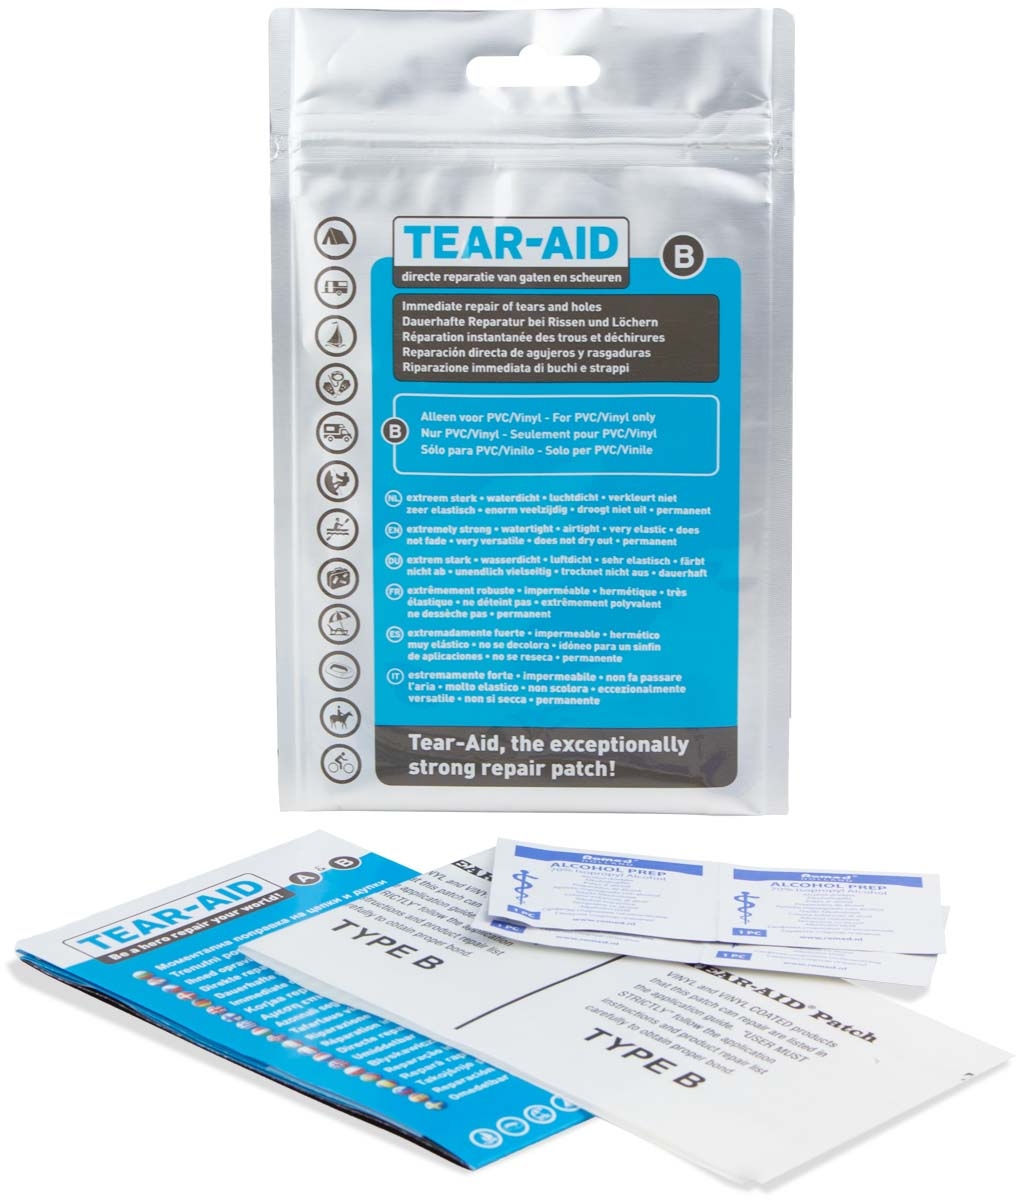 Tear-Aid reparatieset B voor PVC en vinyl